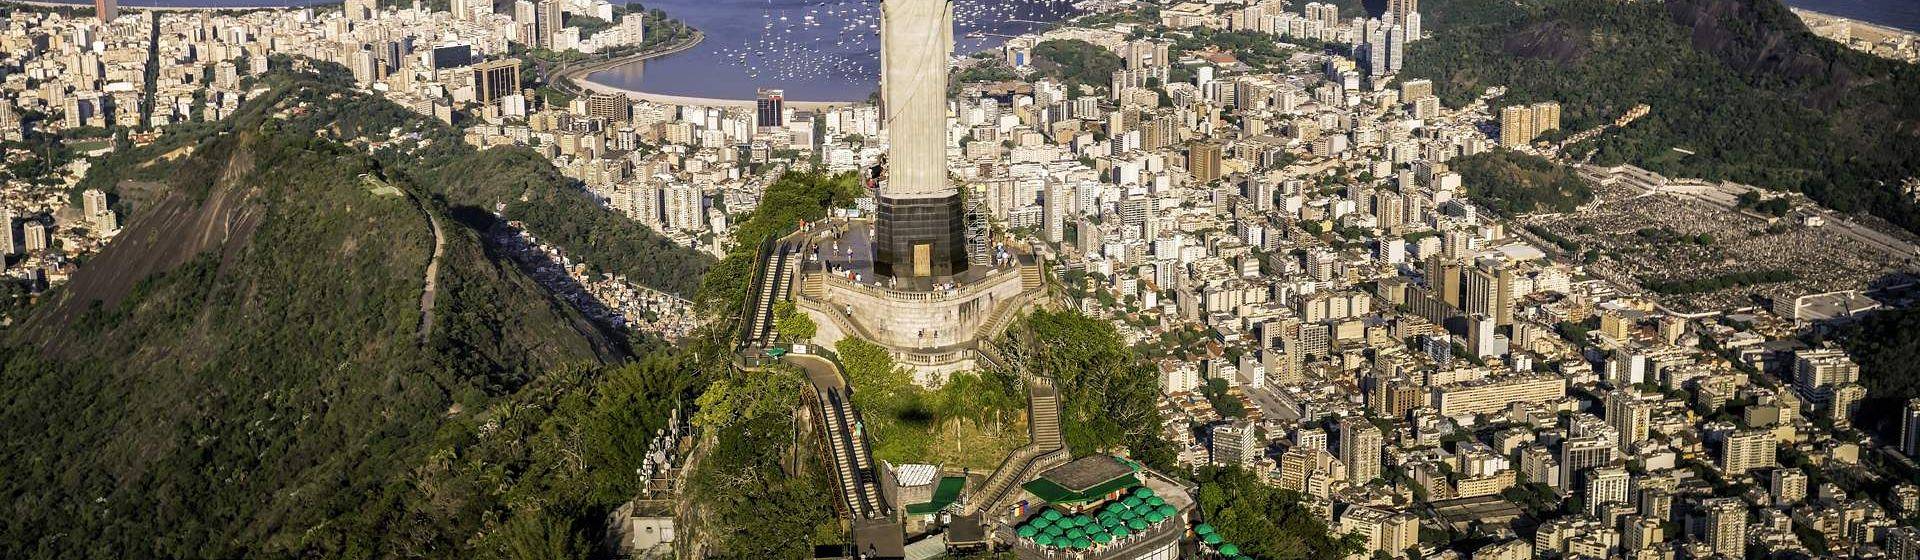 Holidays to Rio de Janeiro Image